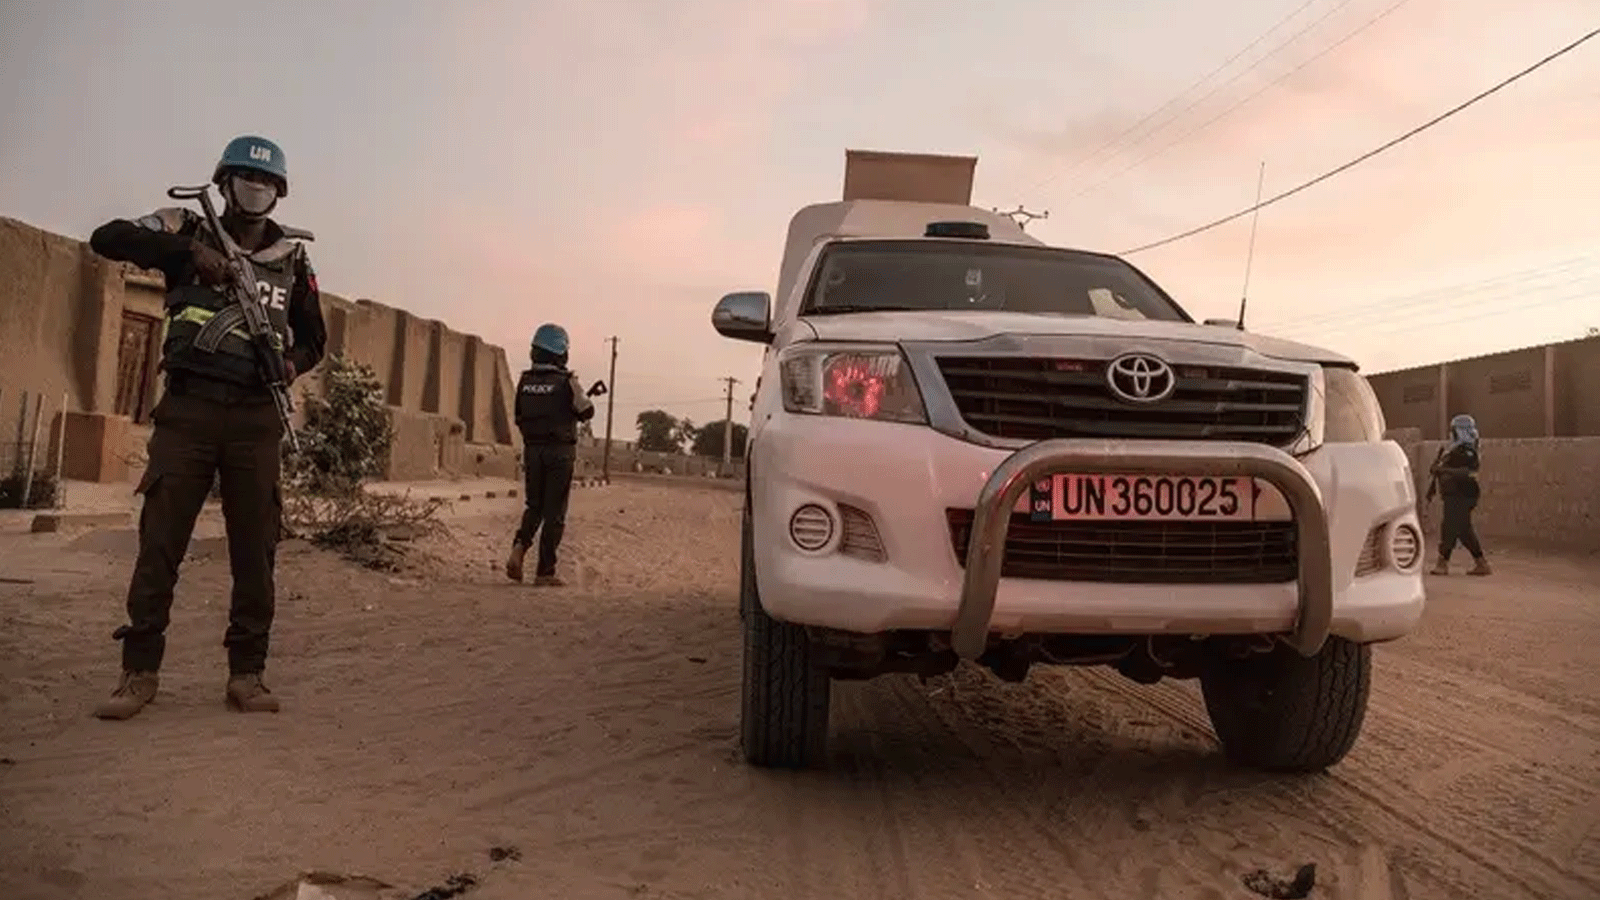 أحد أفراد شرطة الأمم المتحدة يرافق سيارة مصفحة تابعة لبعثة الأمم المتحدة لتحقيق الاستقرار في مالي